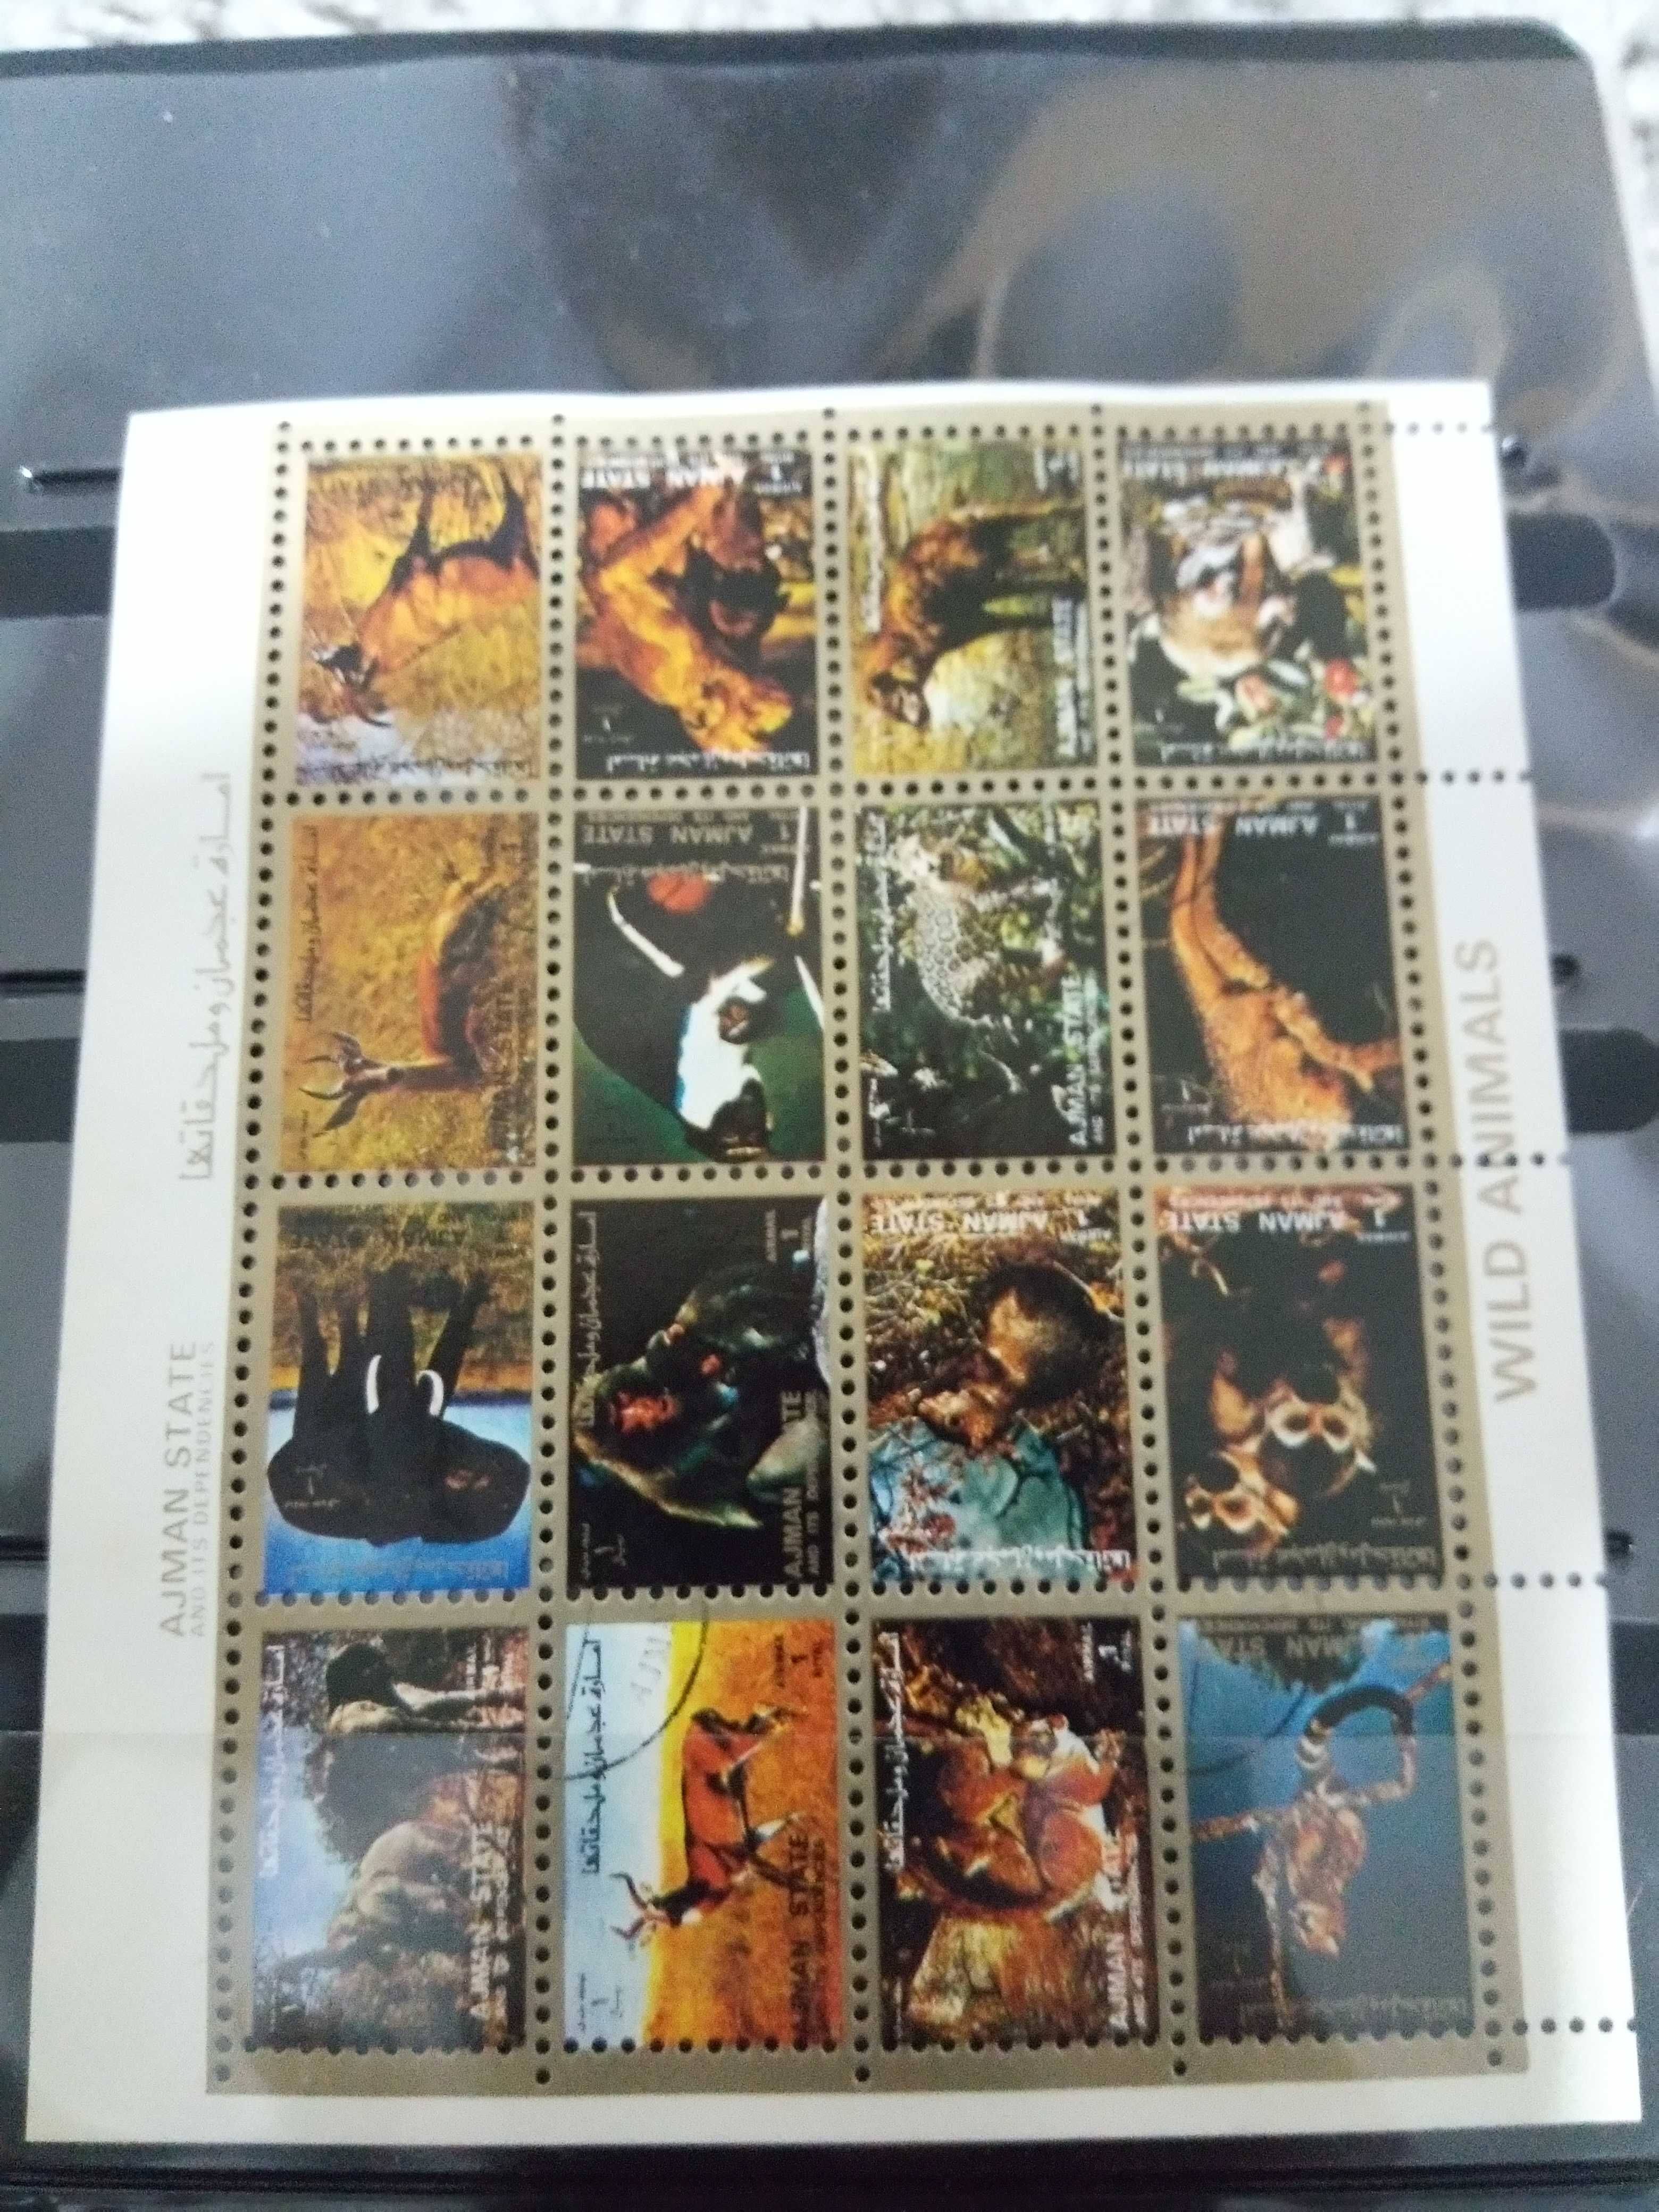 Album de selos com alguns conjuntos